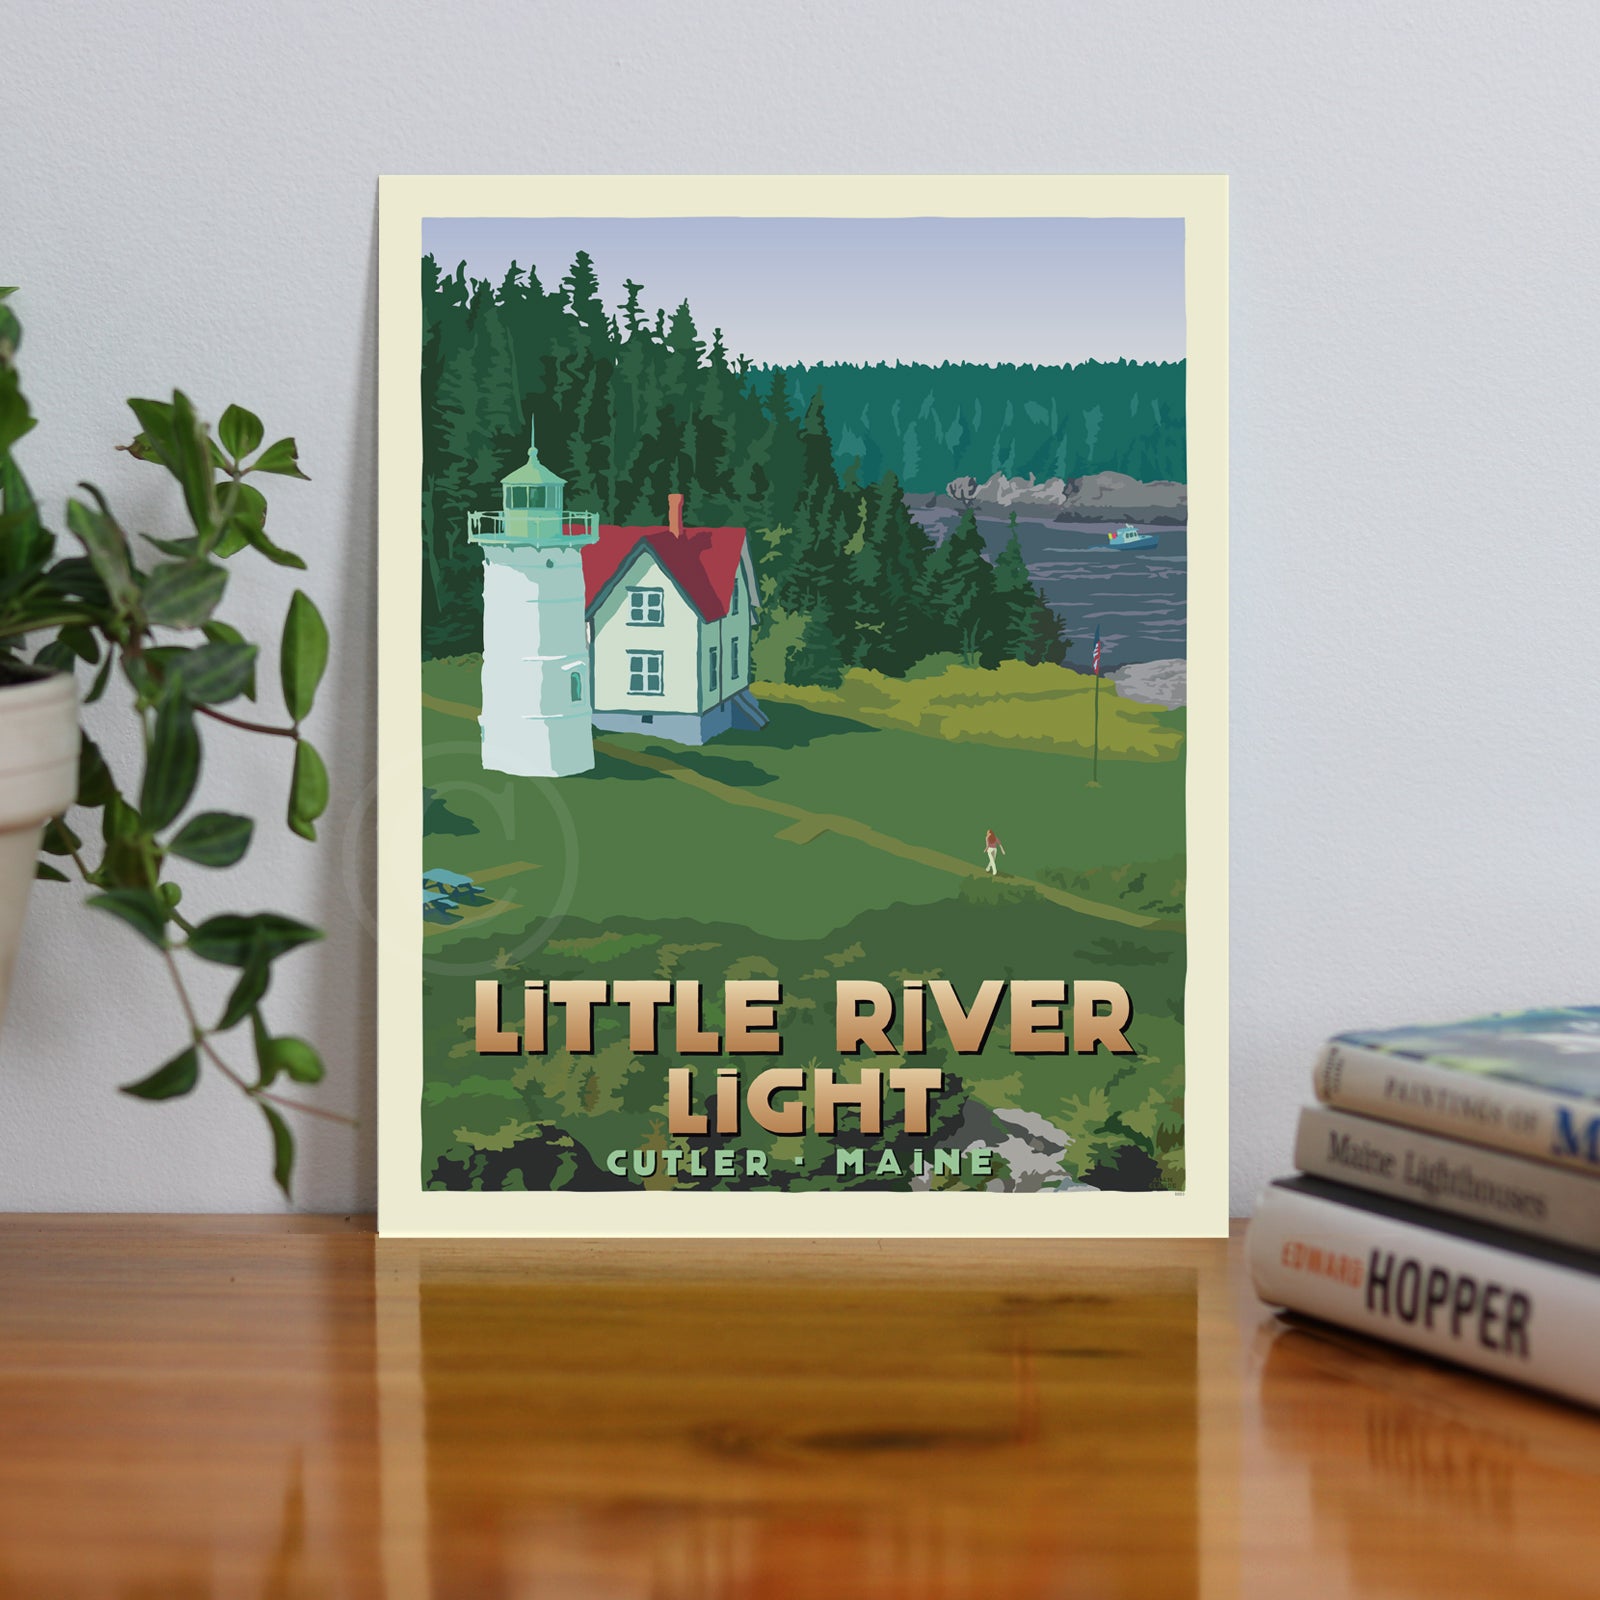 Little River Light Art Print 8" x 10" Travel Poster By Alan Claude - Cutler, Maine